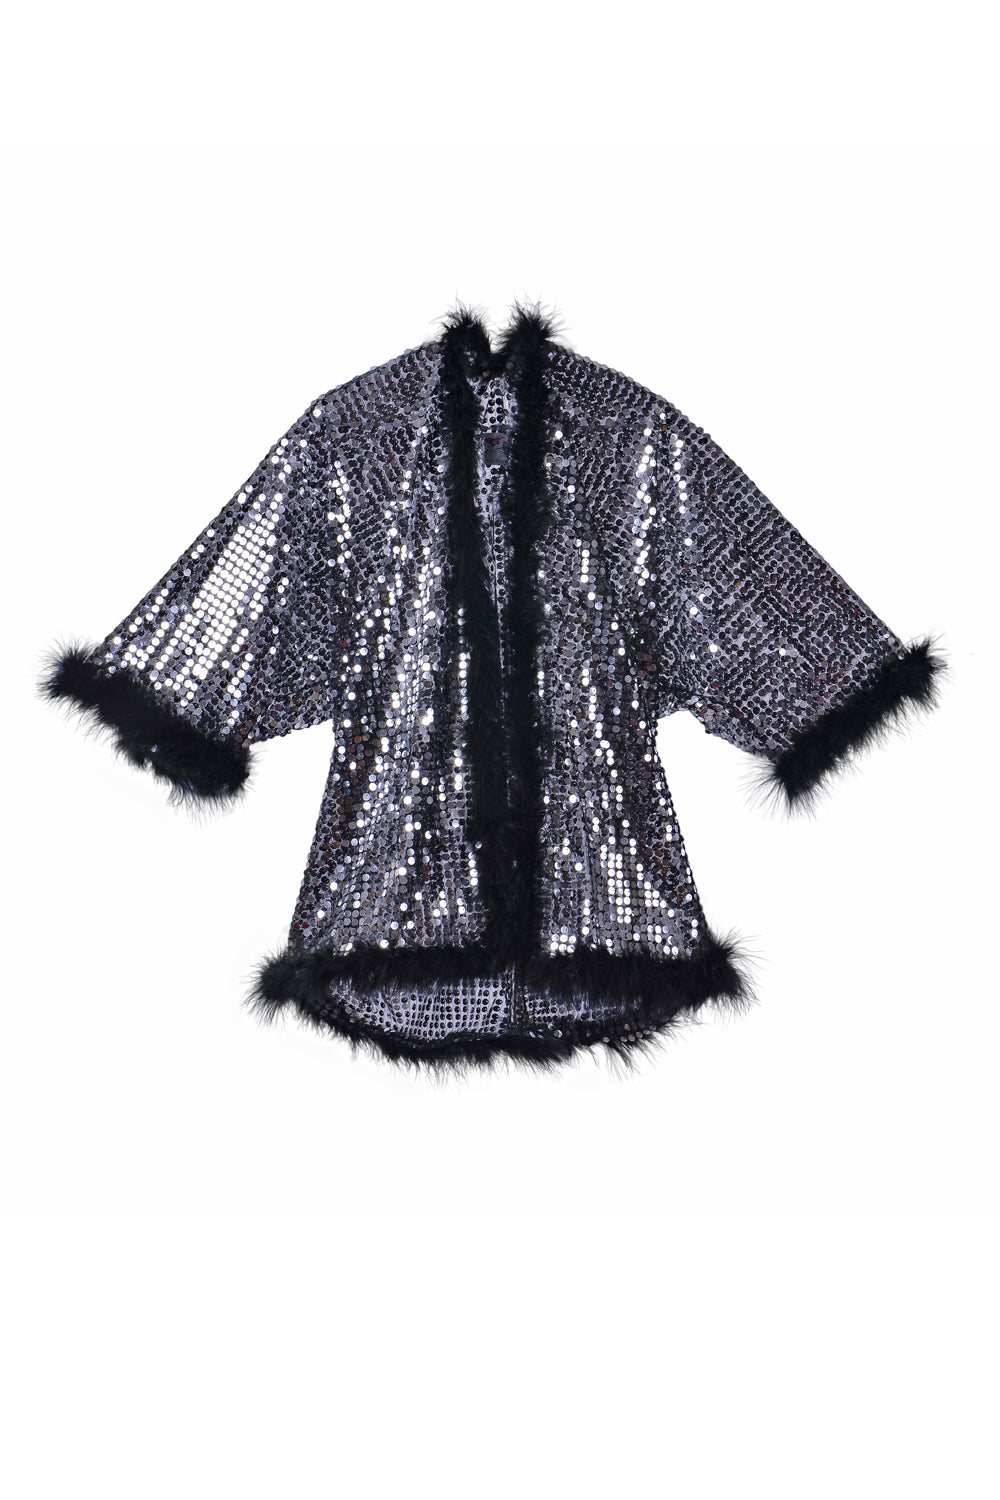 Sequin Fuzzy Kimono - Black Disco